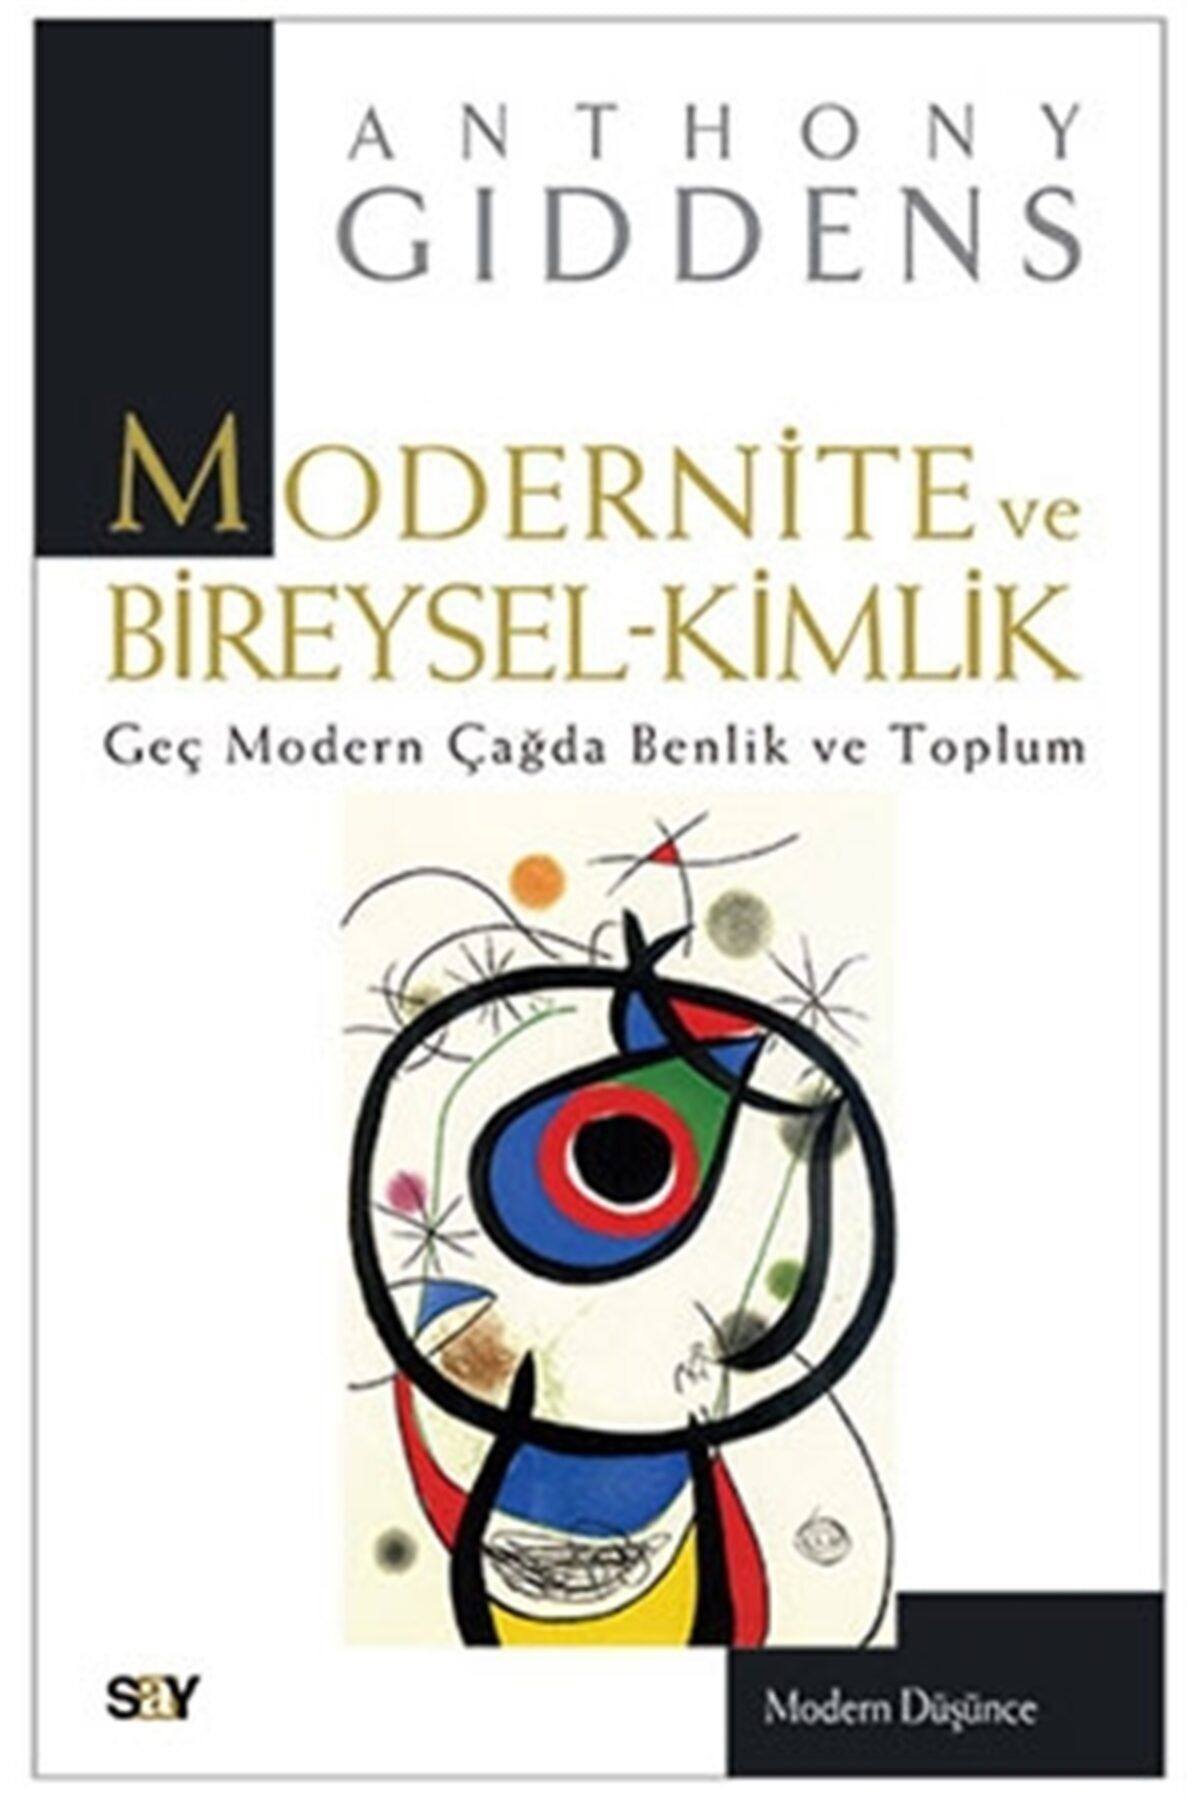 Say Yayınları Modernite Ve Bireysel-kimlik - - Anthony Giddens Kitabı